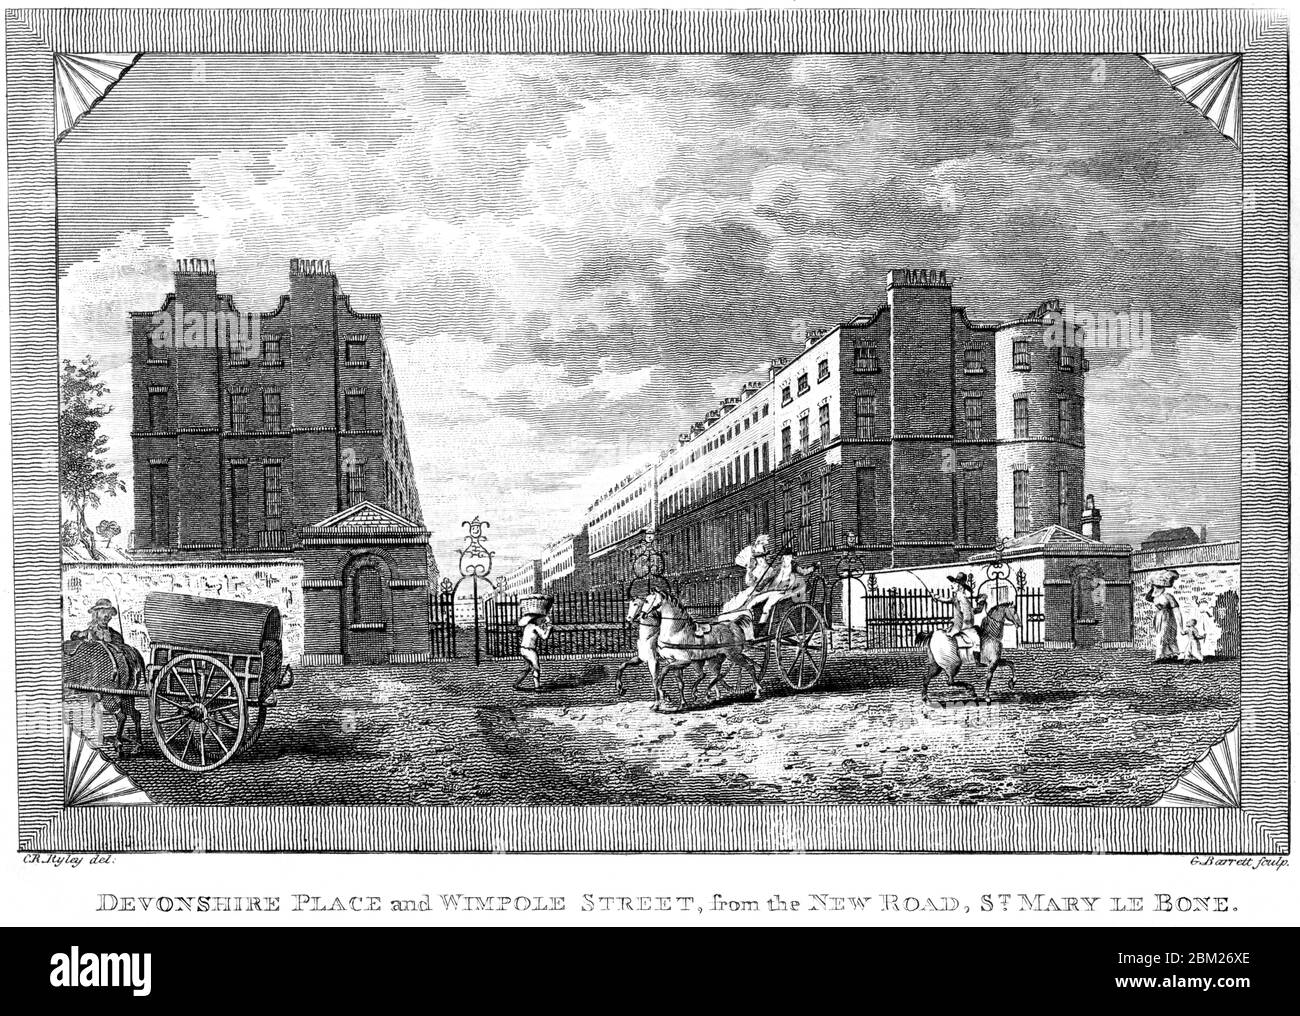 Un'incisione di Devonshire Place e Wimpole Street dalla New Road, St Mary le Bone scansionata ad alta risoluzione da un libro stampato nel 1827. Foto Stock